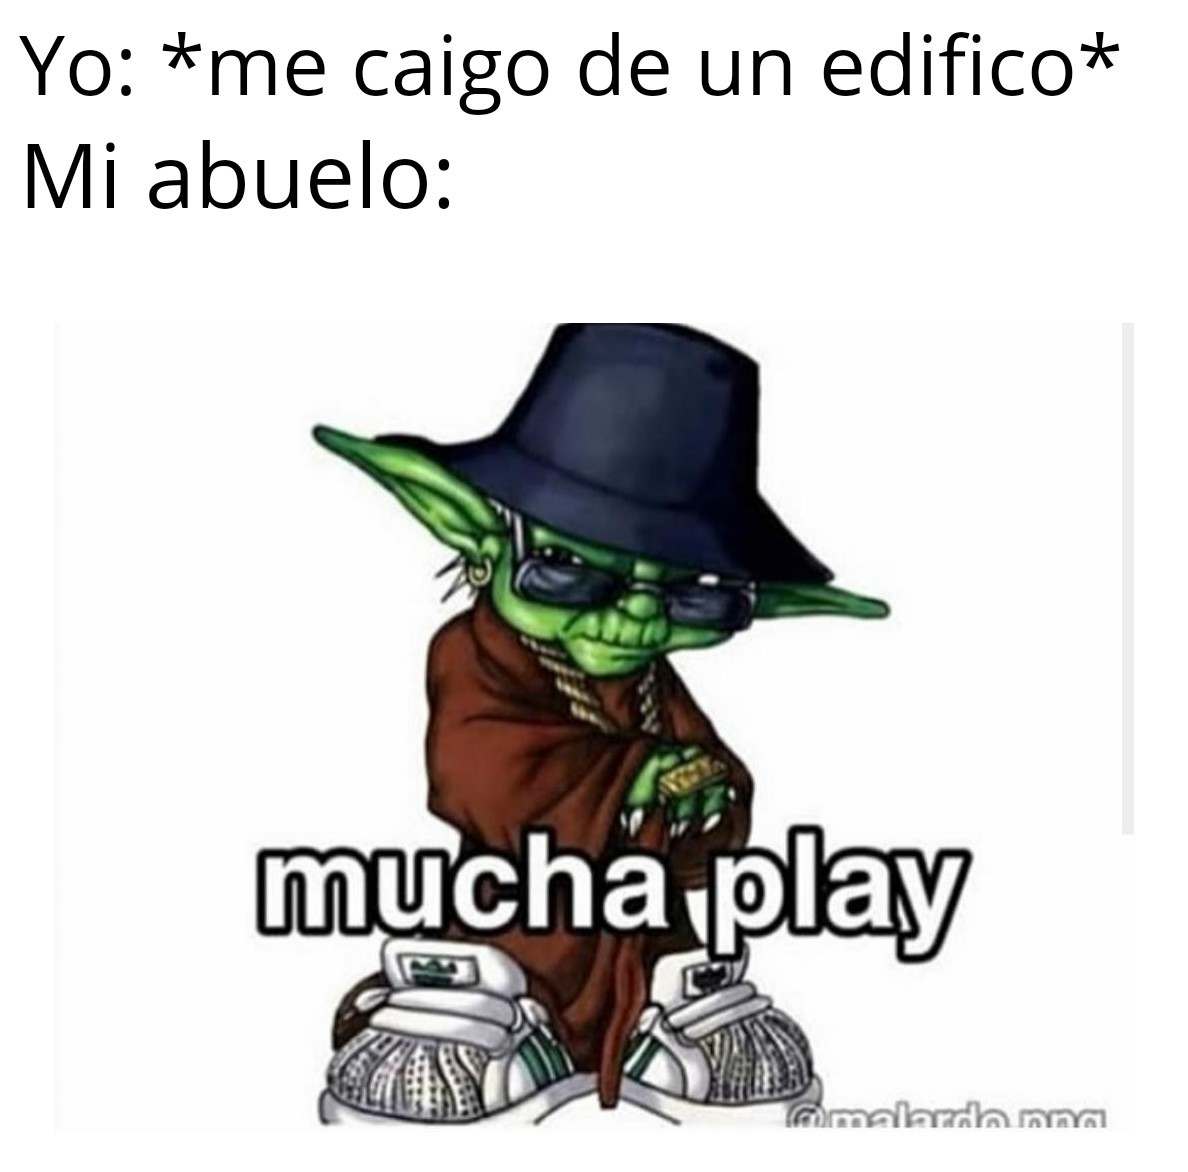 Mucha play - meme